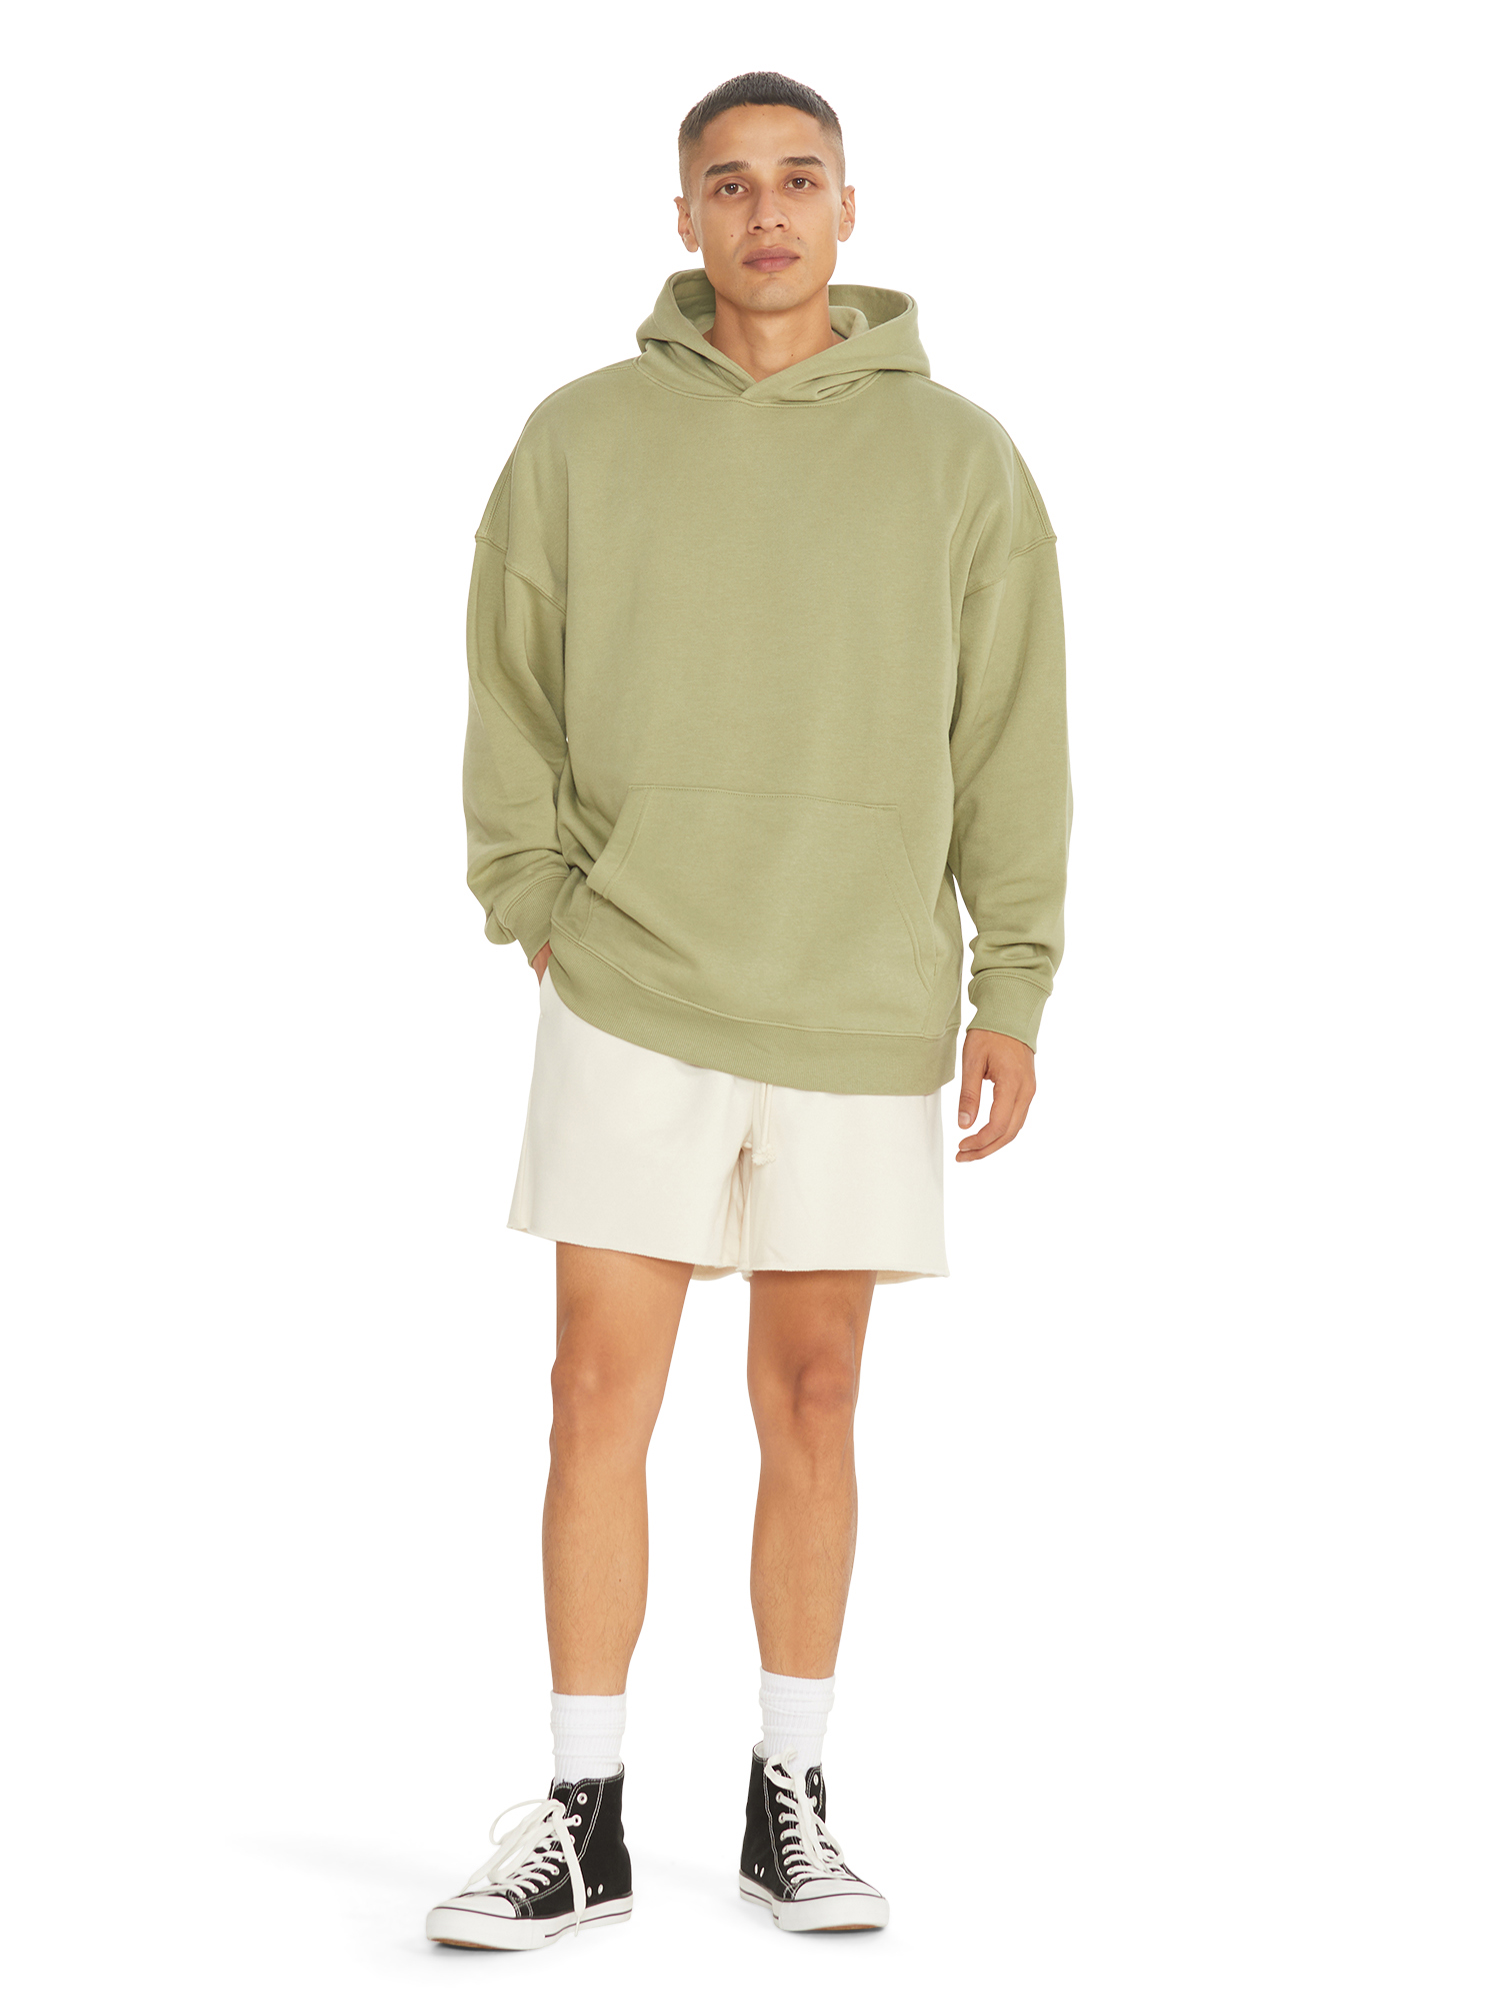 No Boundaries All Gender Fleece Hoodie Sweatshirt, Men's Sizes XS - 5XL - image 3 of 5